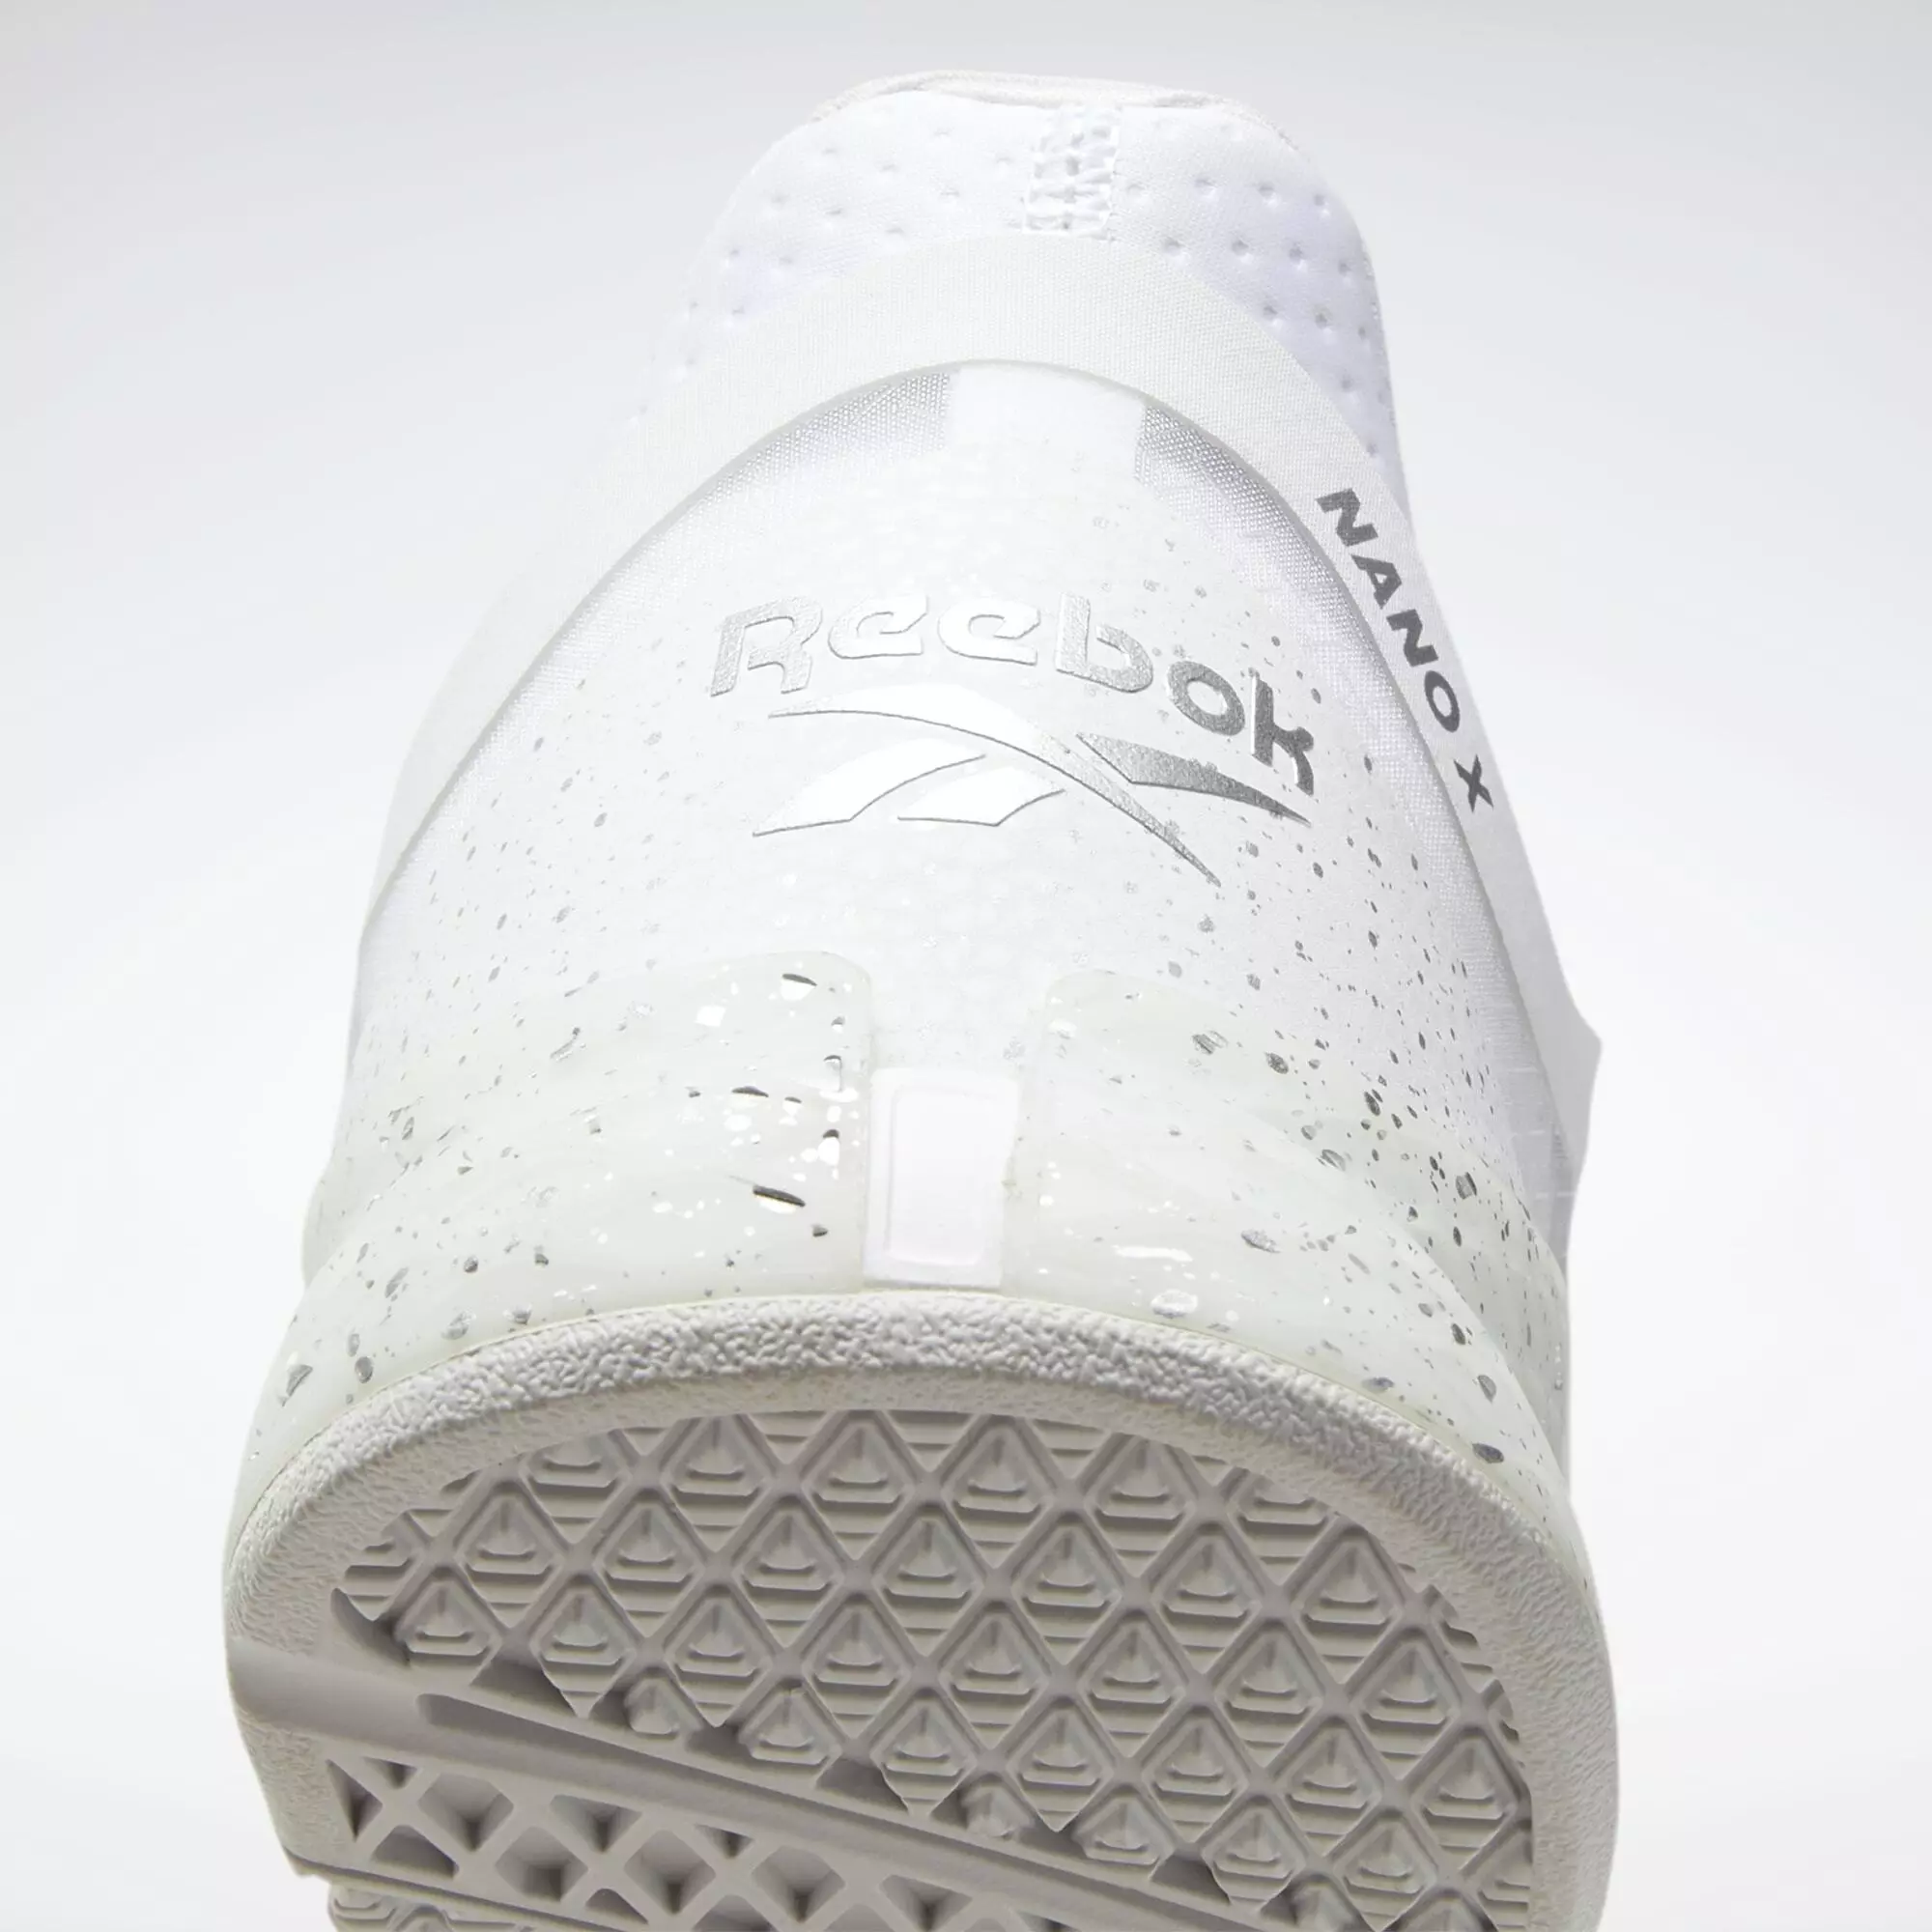 Reebok Nano X Pr Shoes Fitnessschuhe Herren White Pure Grey 2 Silver Metallic Im Online Shop Von Sportscheck Kaufen